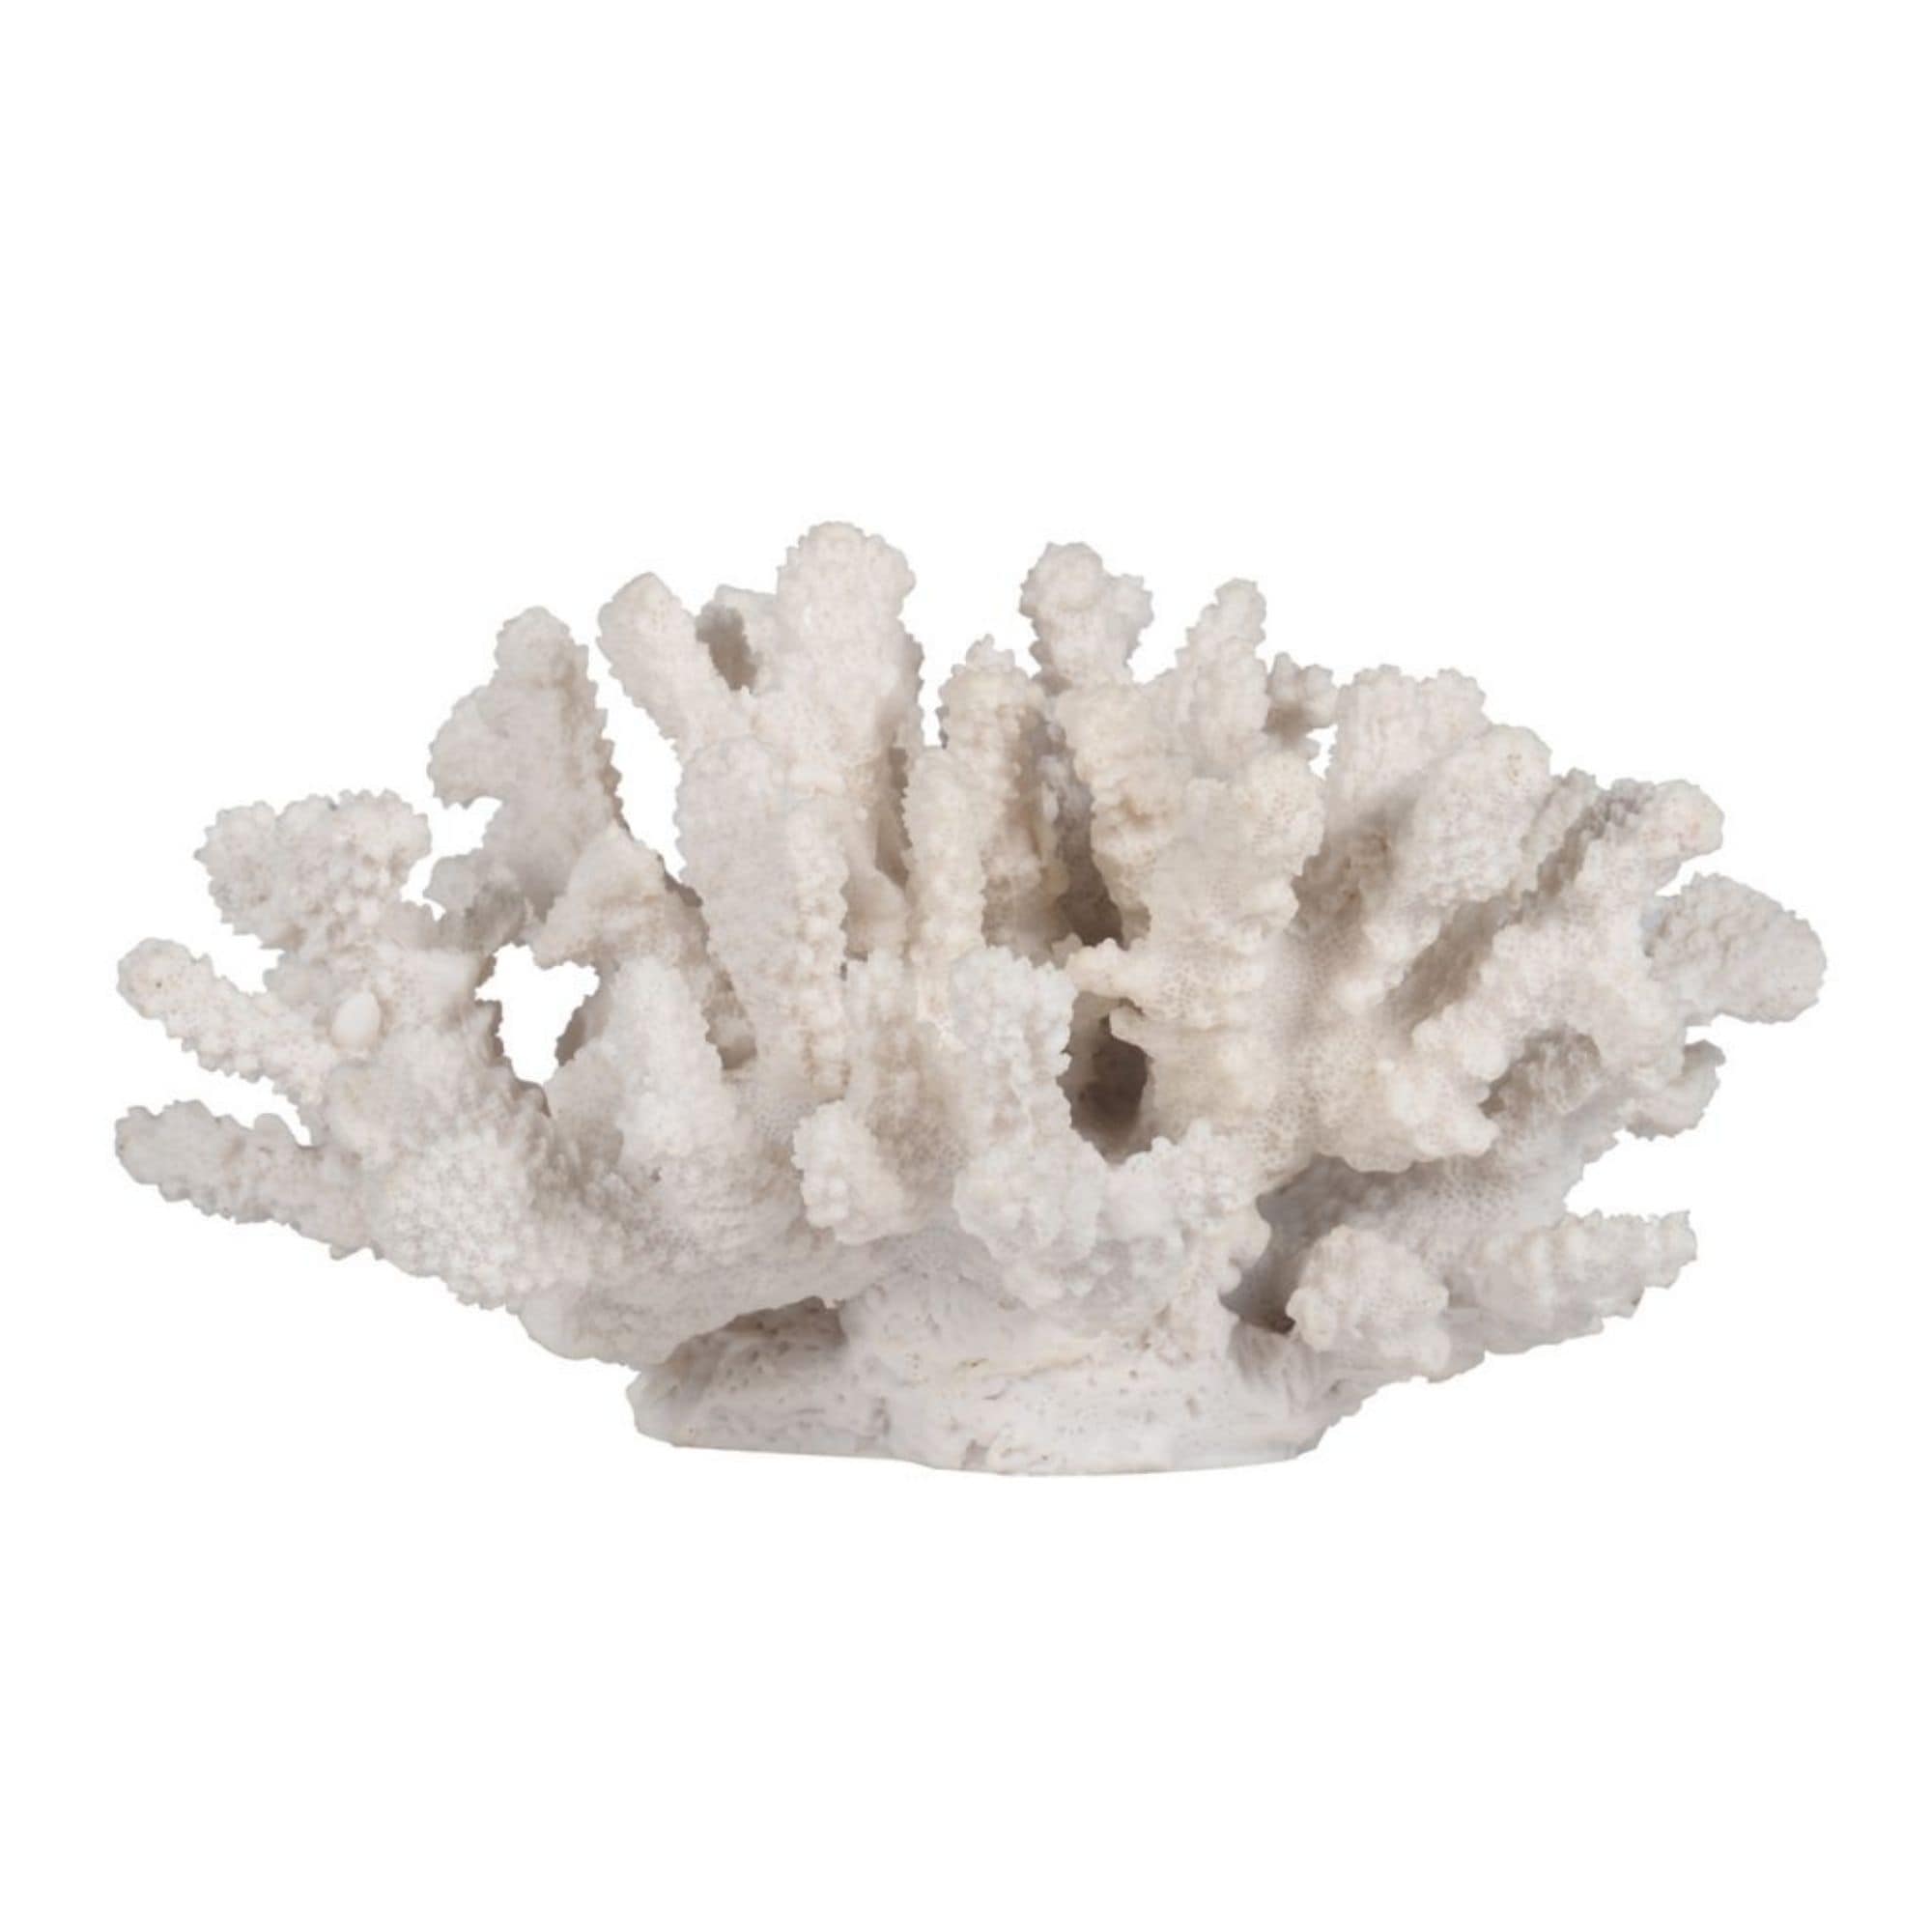 8.25 White Faux Coral Sculpture Decor - Bed Bath & Beyond - 29239392